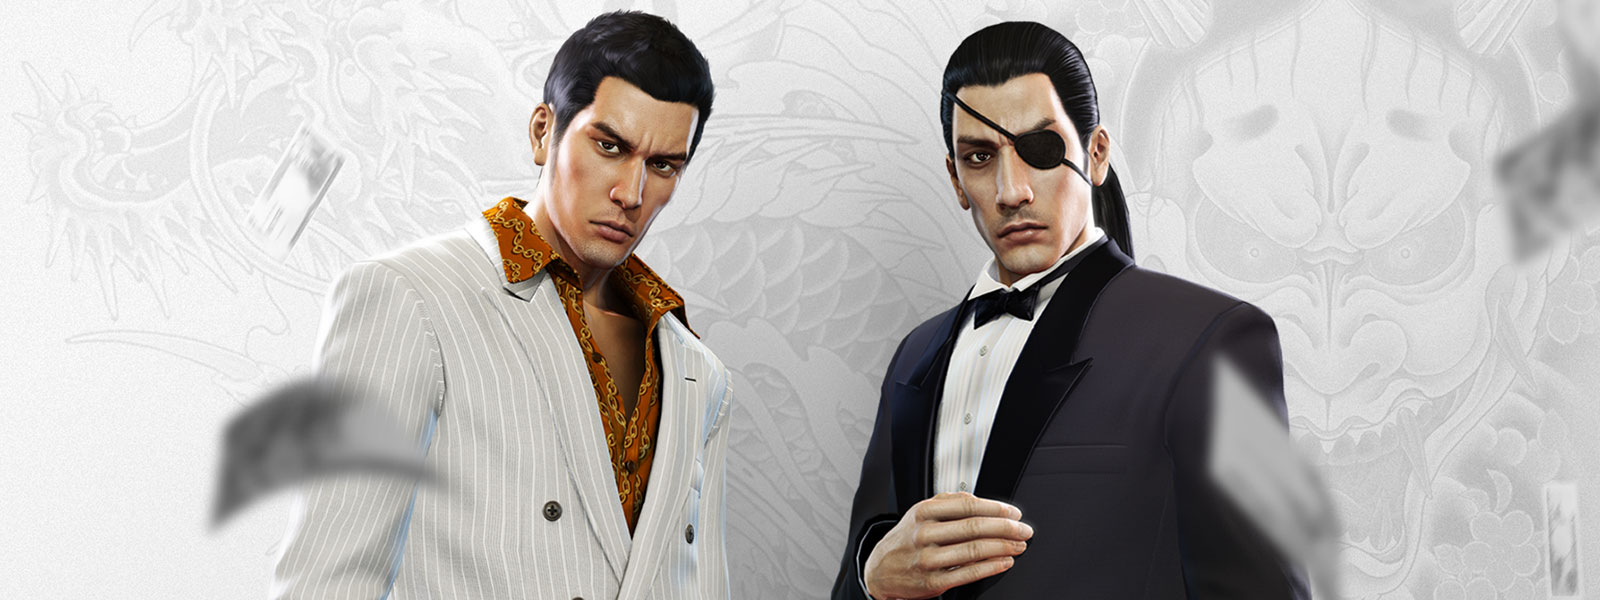 Due personaggi di Yakuza in abiti eleganti con sguardo fisso in avanti mentre dei soldi cadono intorno a loro. Sullo sfondo il disegno di un tatuaggio di un drago in bianco e grigio